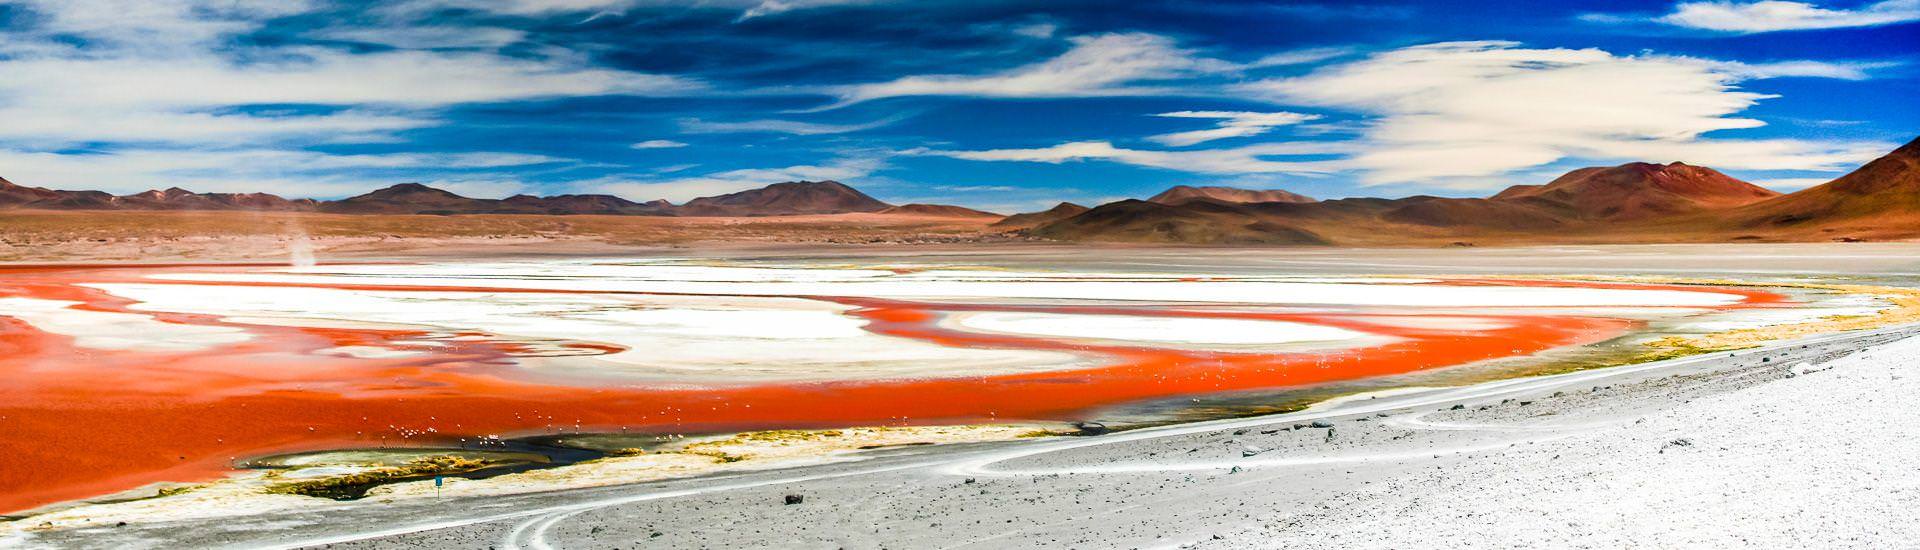 Laguna Colorada im bolivianischen Altiplano |  Dirk Stamm / Chamleon